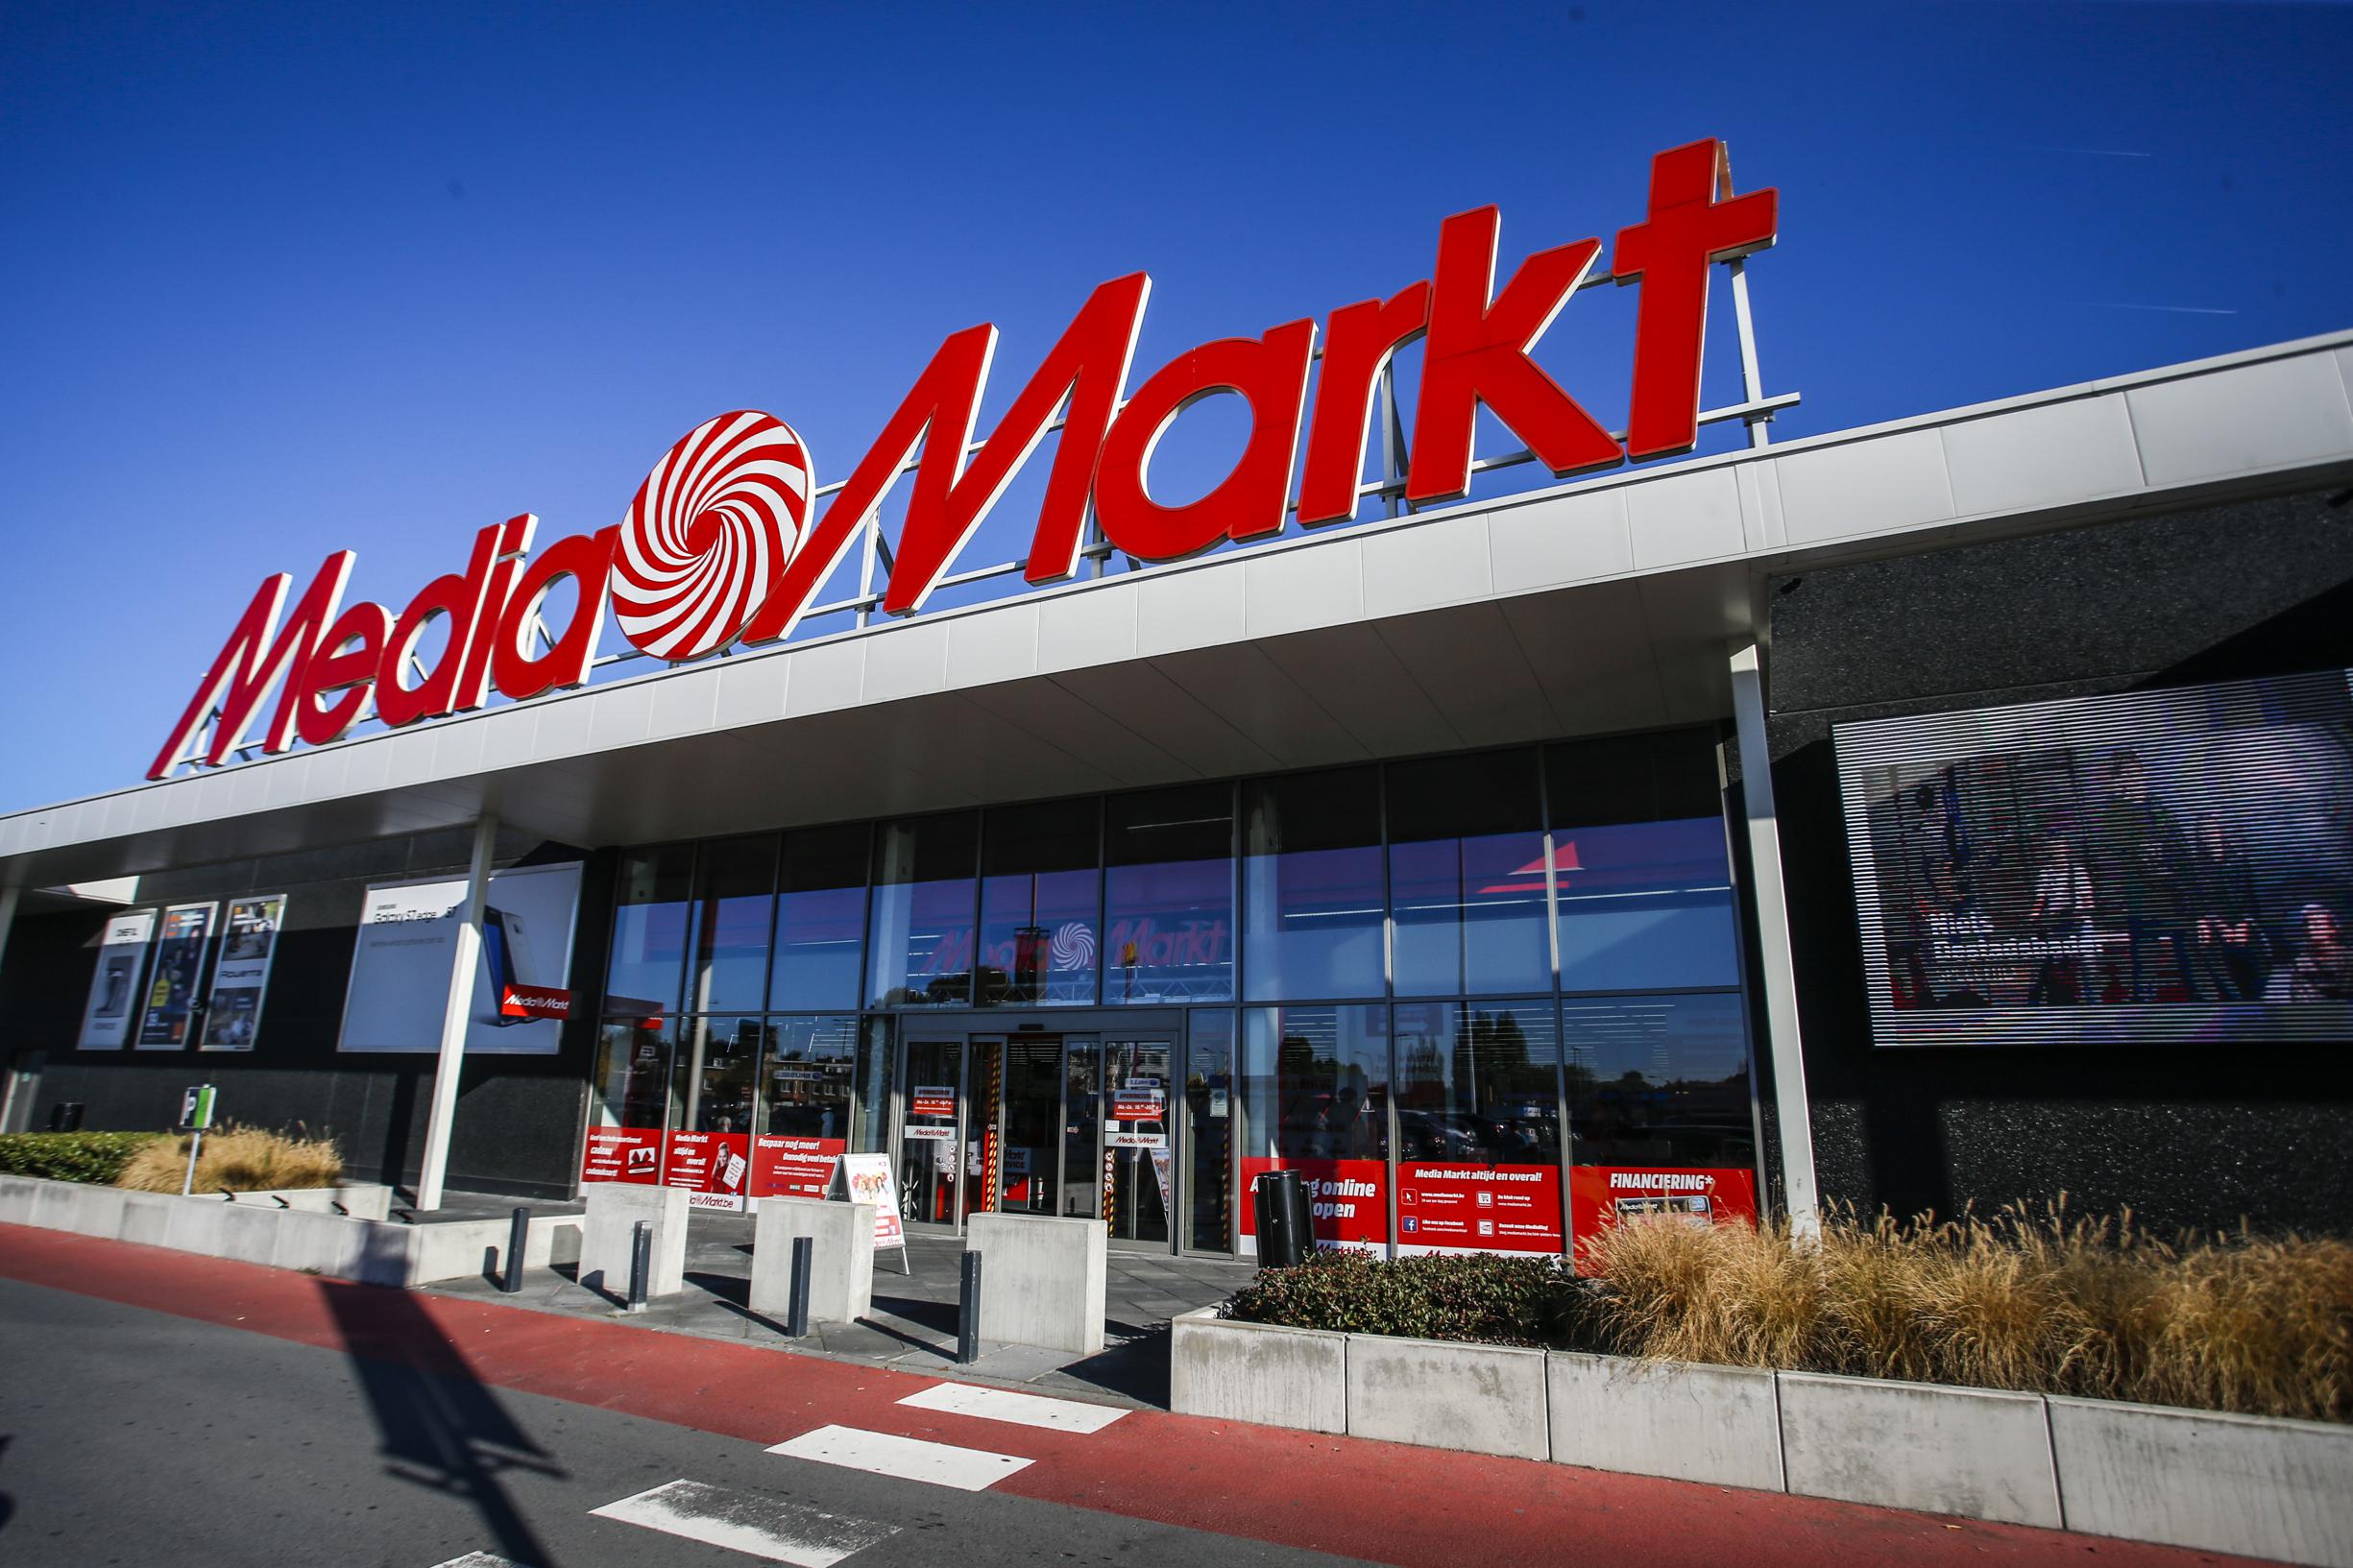 Ambtenaren Eervol Uitbreiden Nederlandse bende plundert rekeningen om te shoppen bij MediaMarkt  (Hasselt) | Het Nieuwsblad Mobile